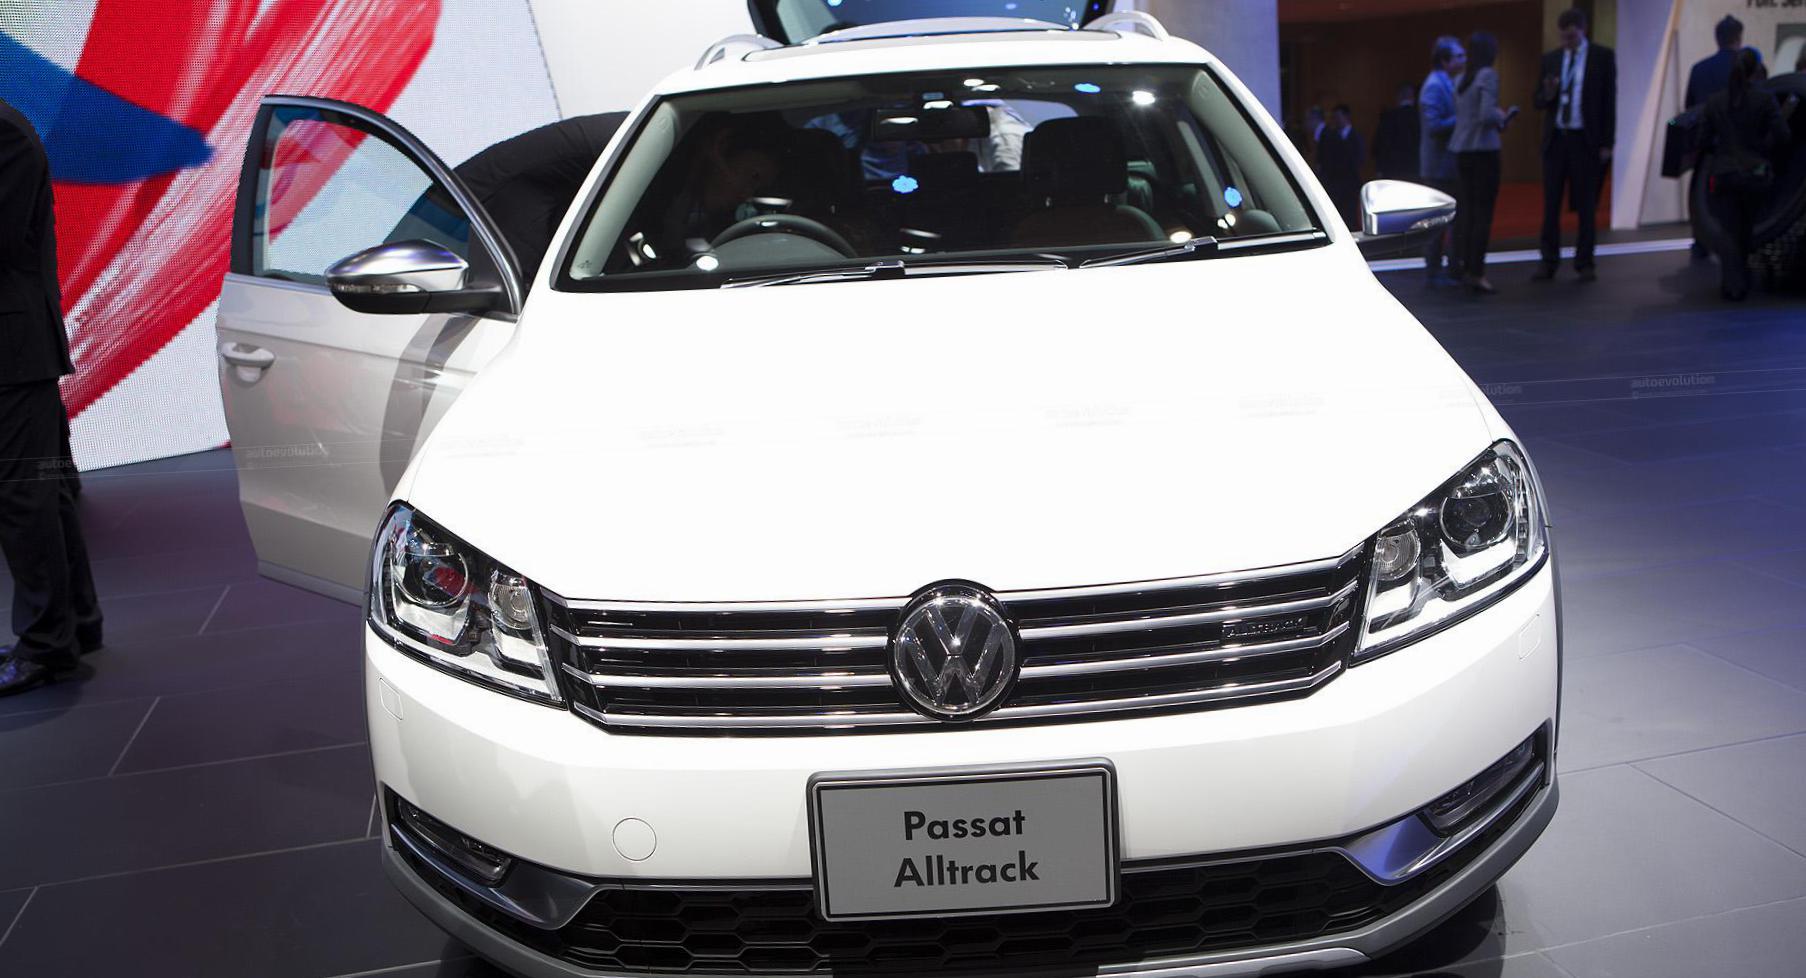 Passat Alltrack Volkswagen review 2008